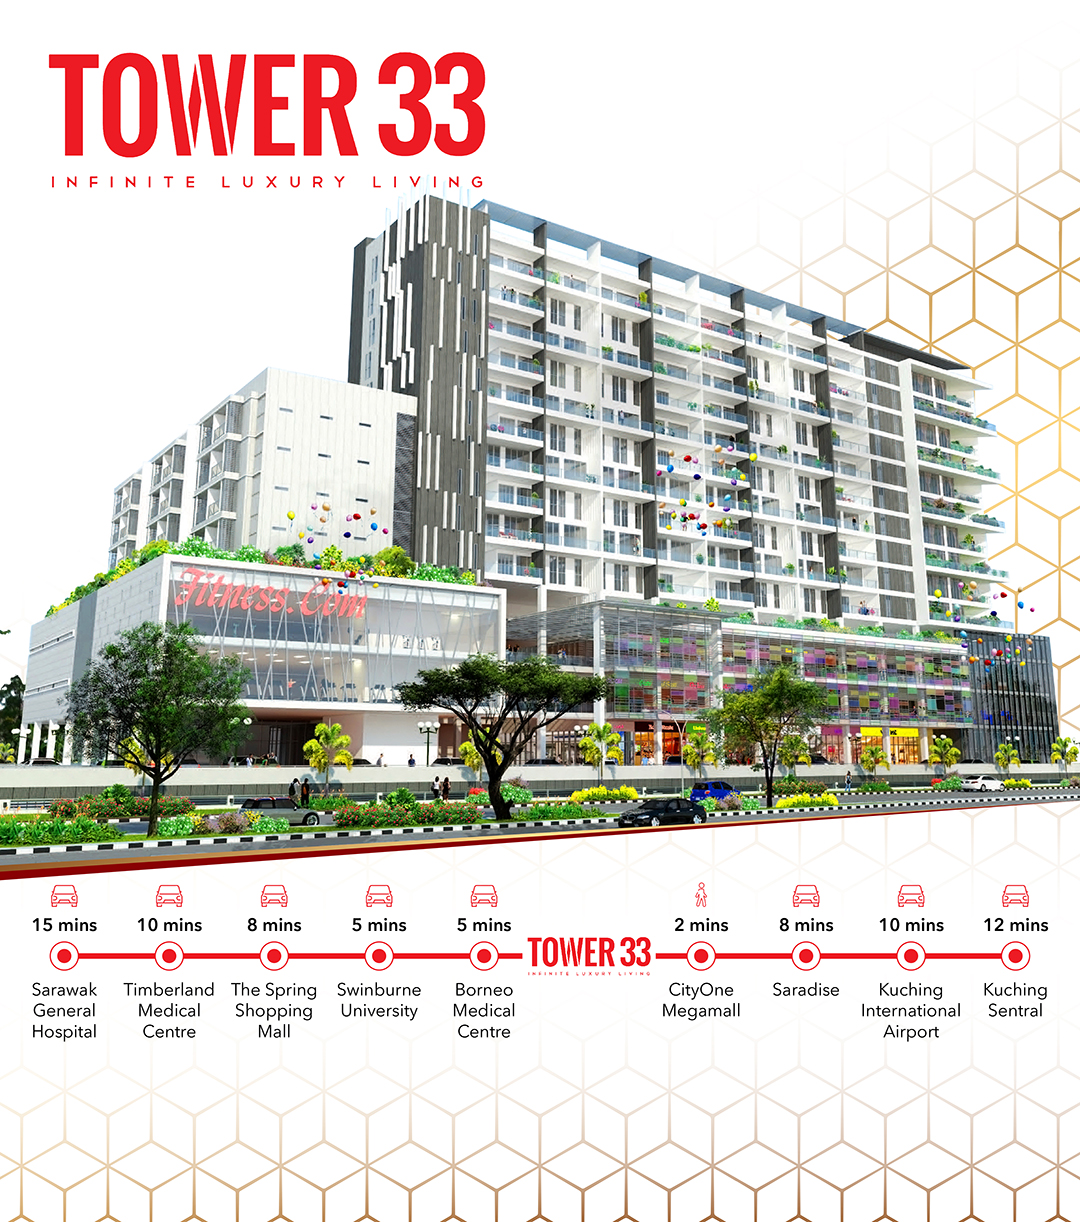 Tower 33 @ Jalan Song, Kuching